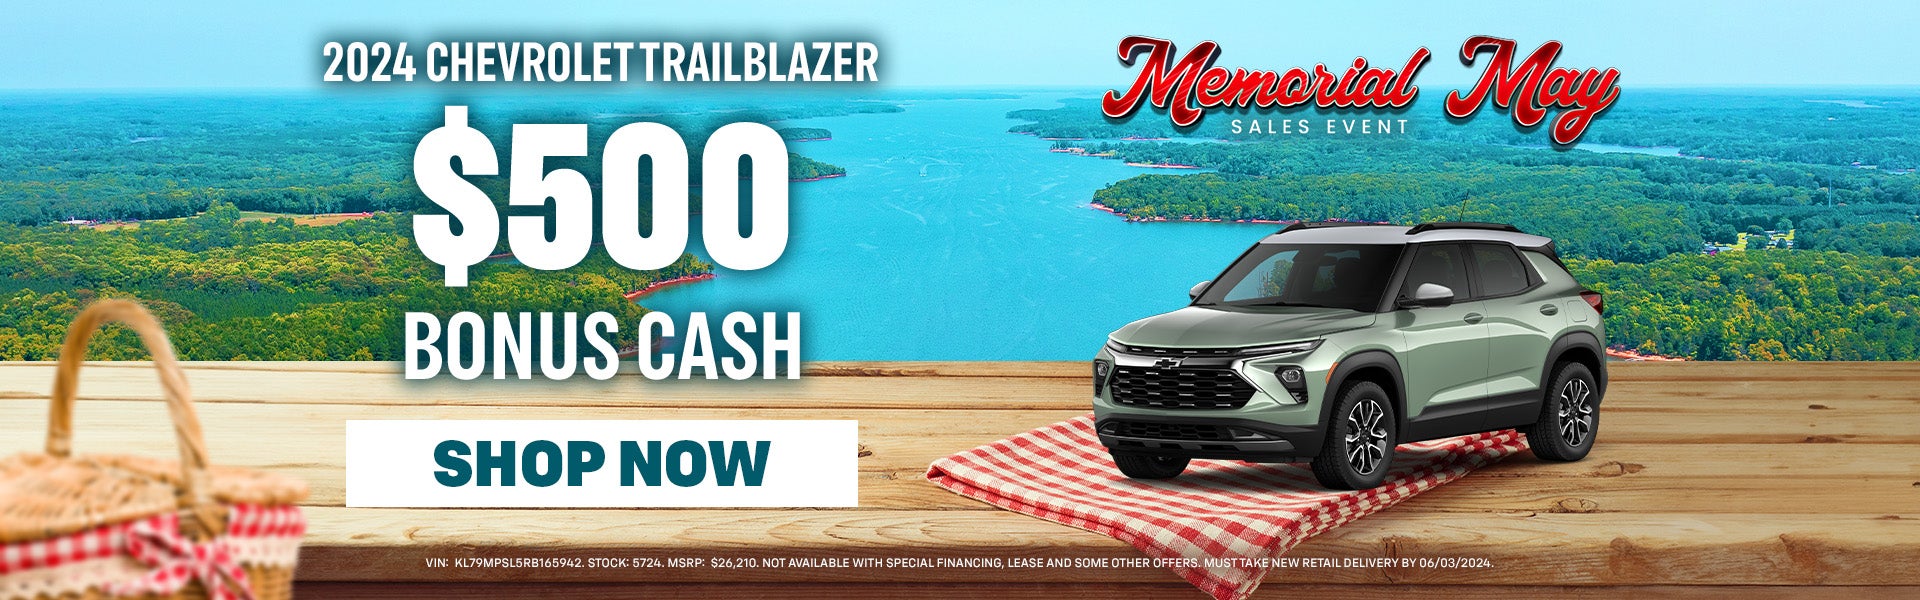 $500 bonus cash on 2024 Chevy Trailblazer